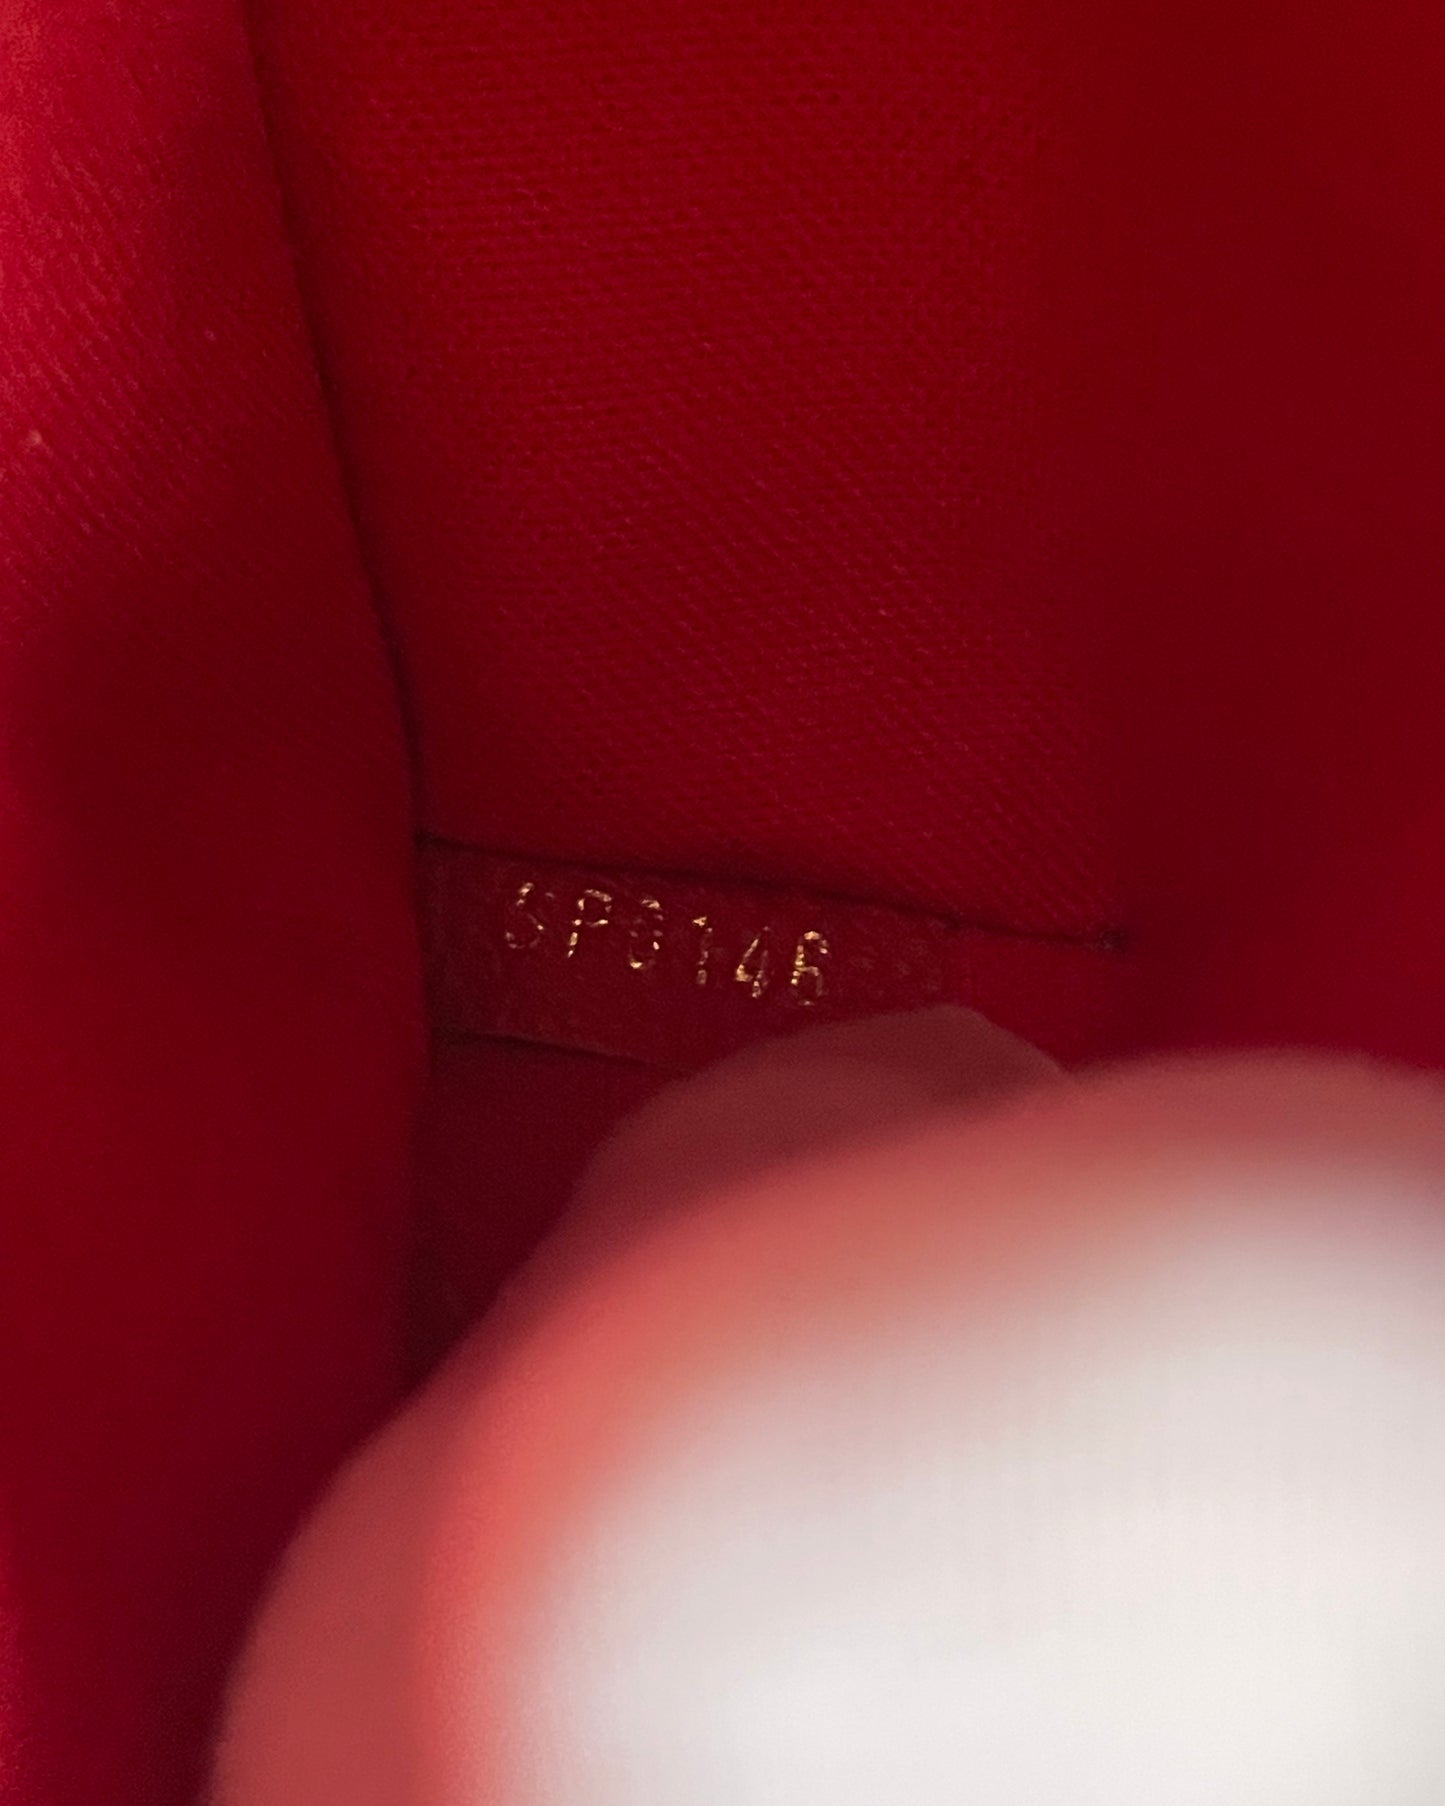 Sac Louis Vuitton Nano Montaigne en cuir grainé rouge